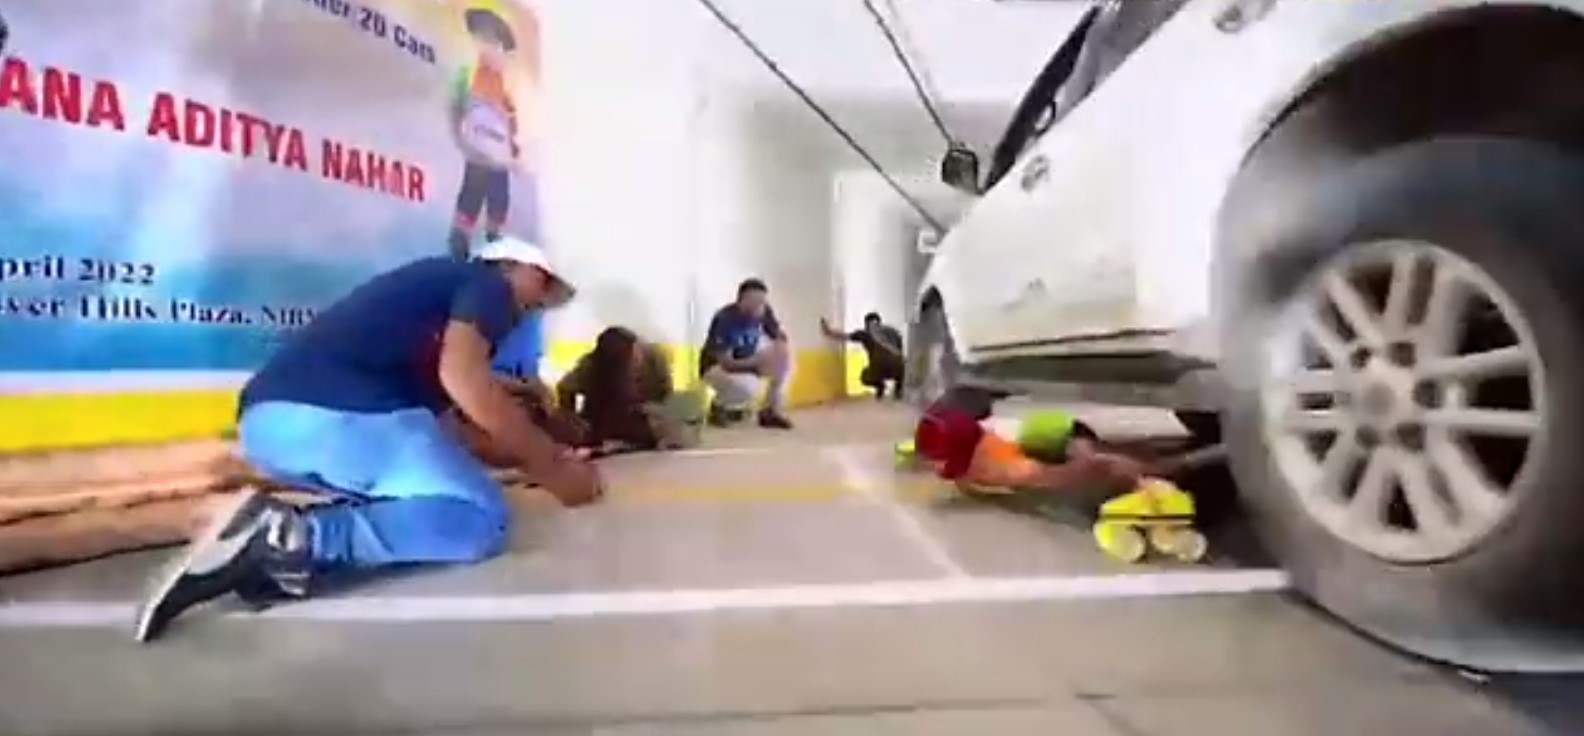 فتاة هندية تحقق رقم قياسة بالتزلج تحت السيارات